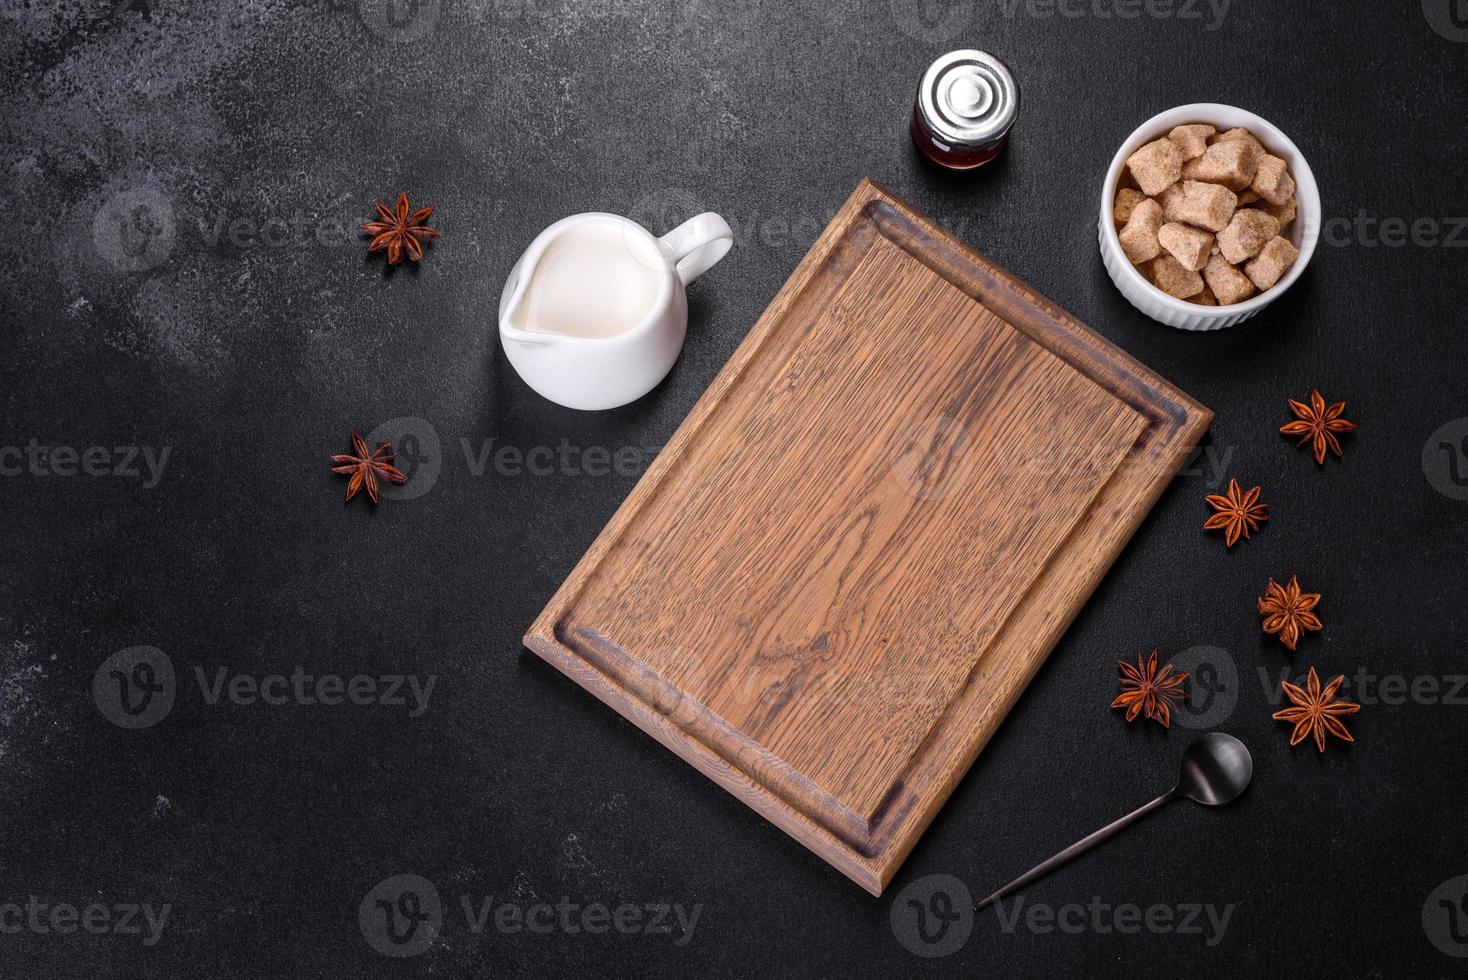 suiker, kaneel en andere kruiden op een houten snijplank foto